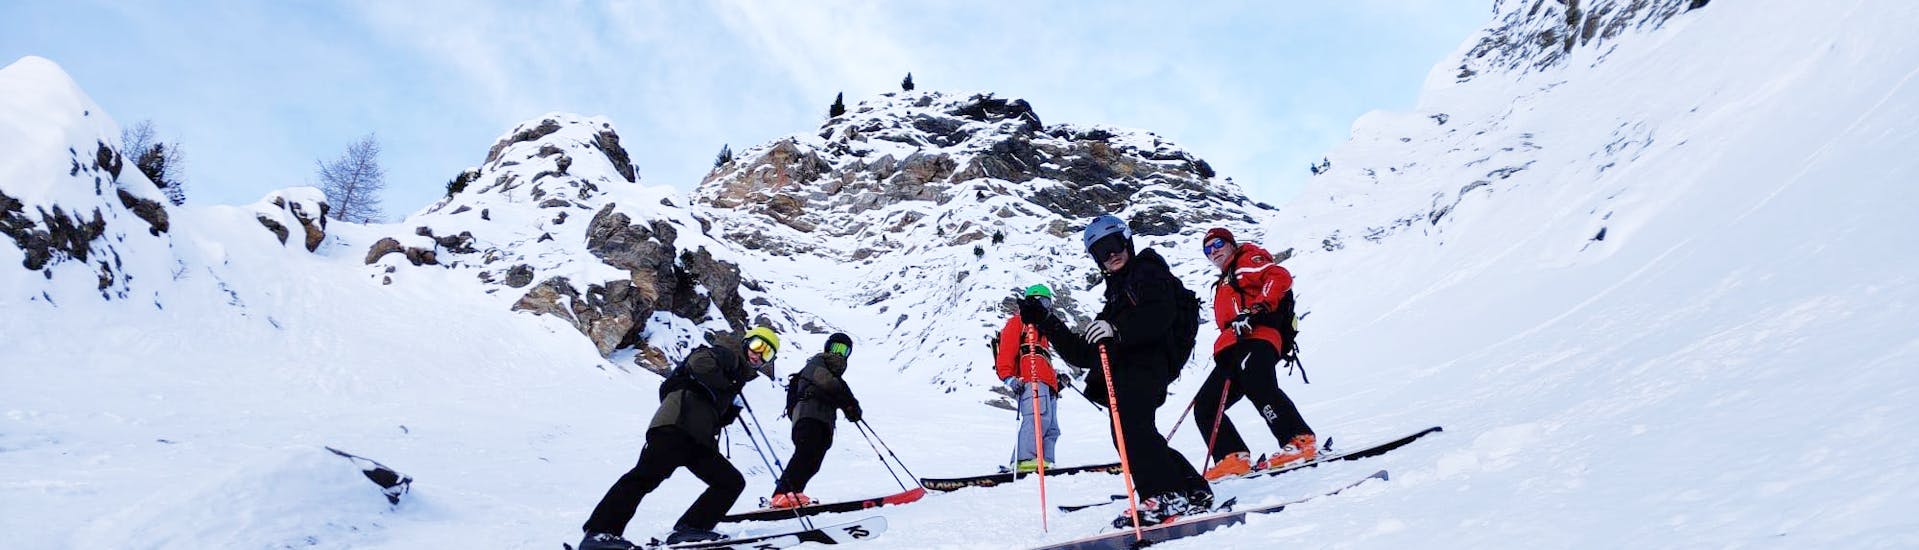 Mensen die privé skilessen volgen voor volwassenen van alle niveaus met Scuola di Sci Monte Bianco Courmayeur.